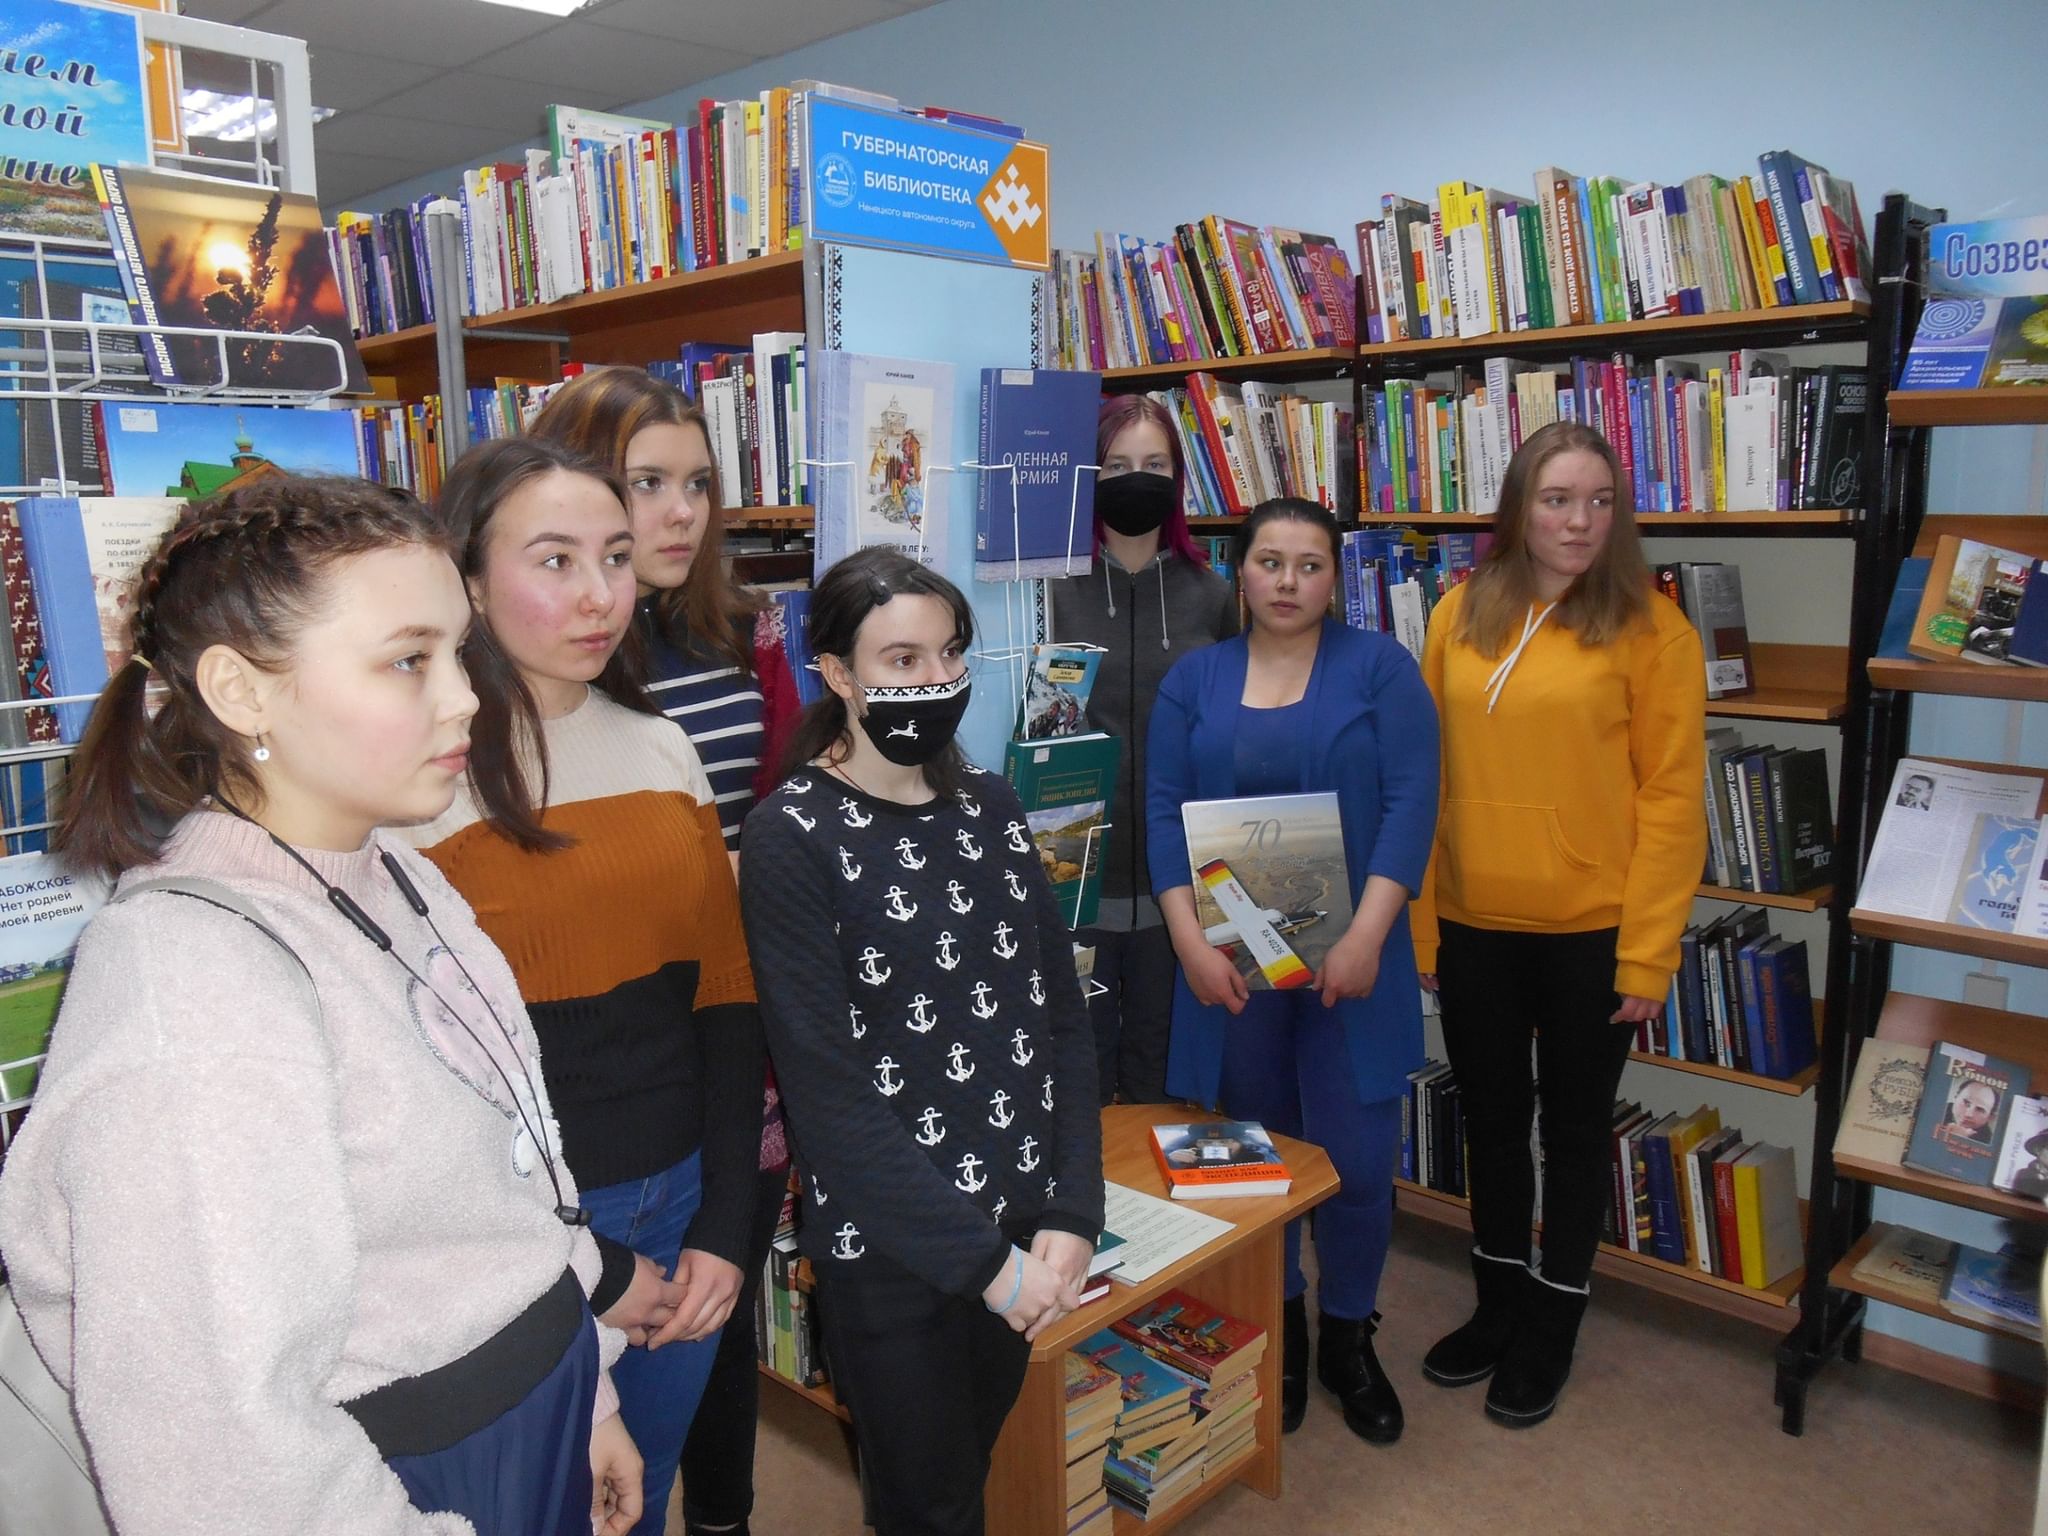 Проект «Губернаторская библиотека Ненецкого автономного округа»